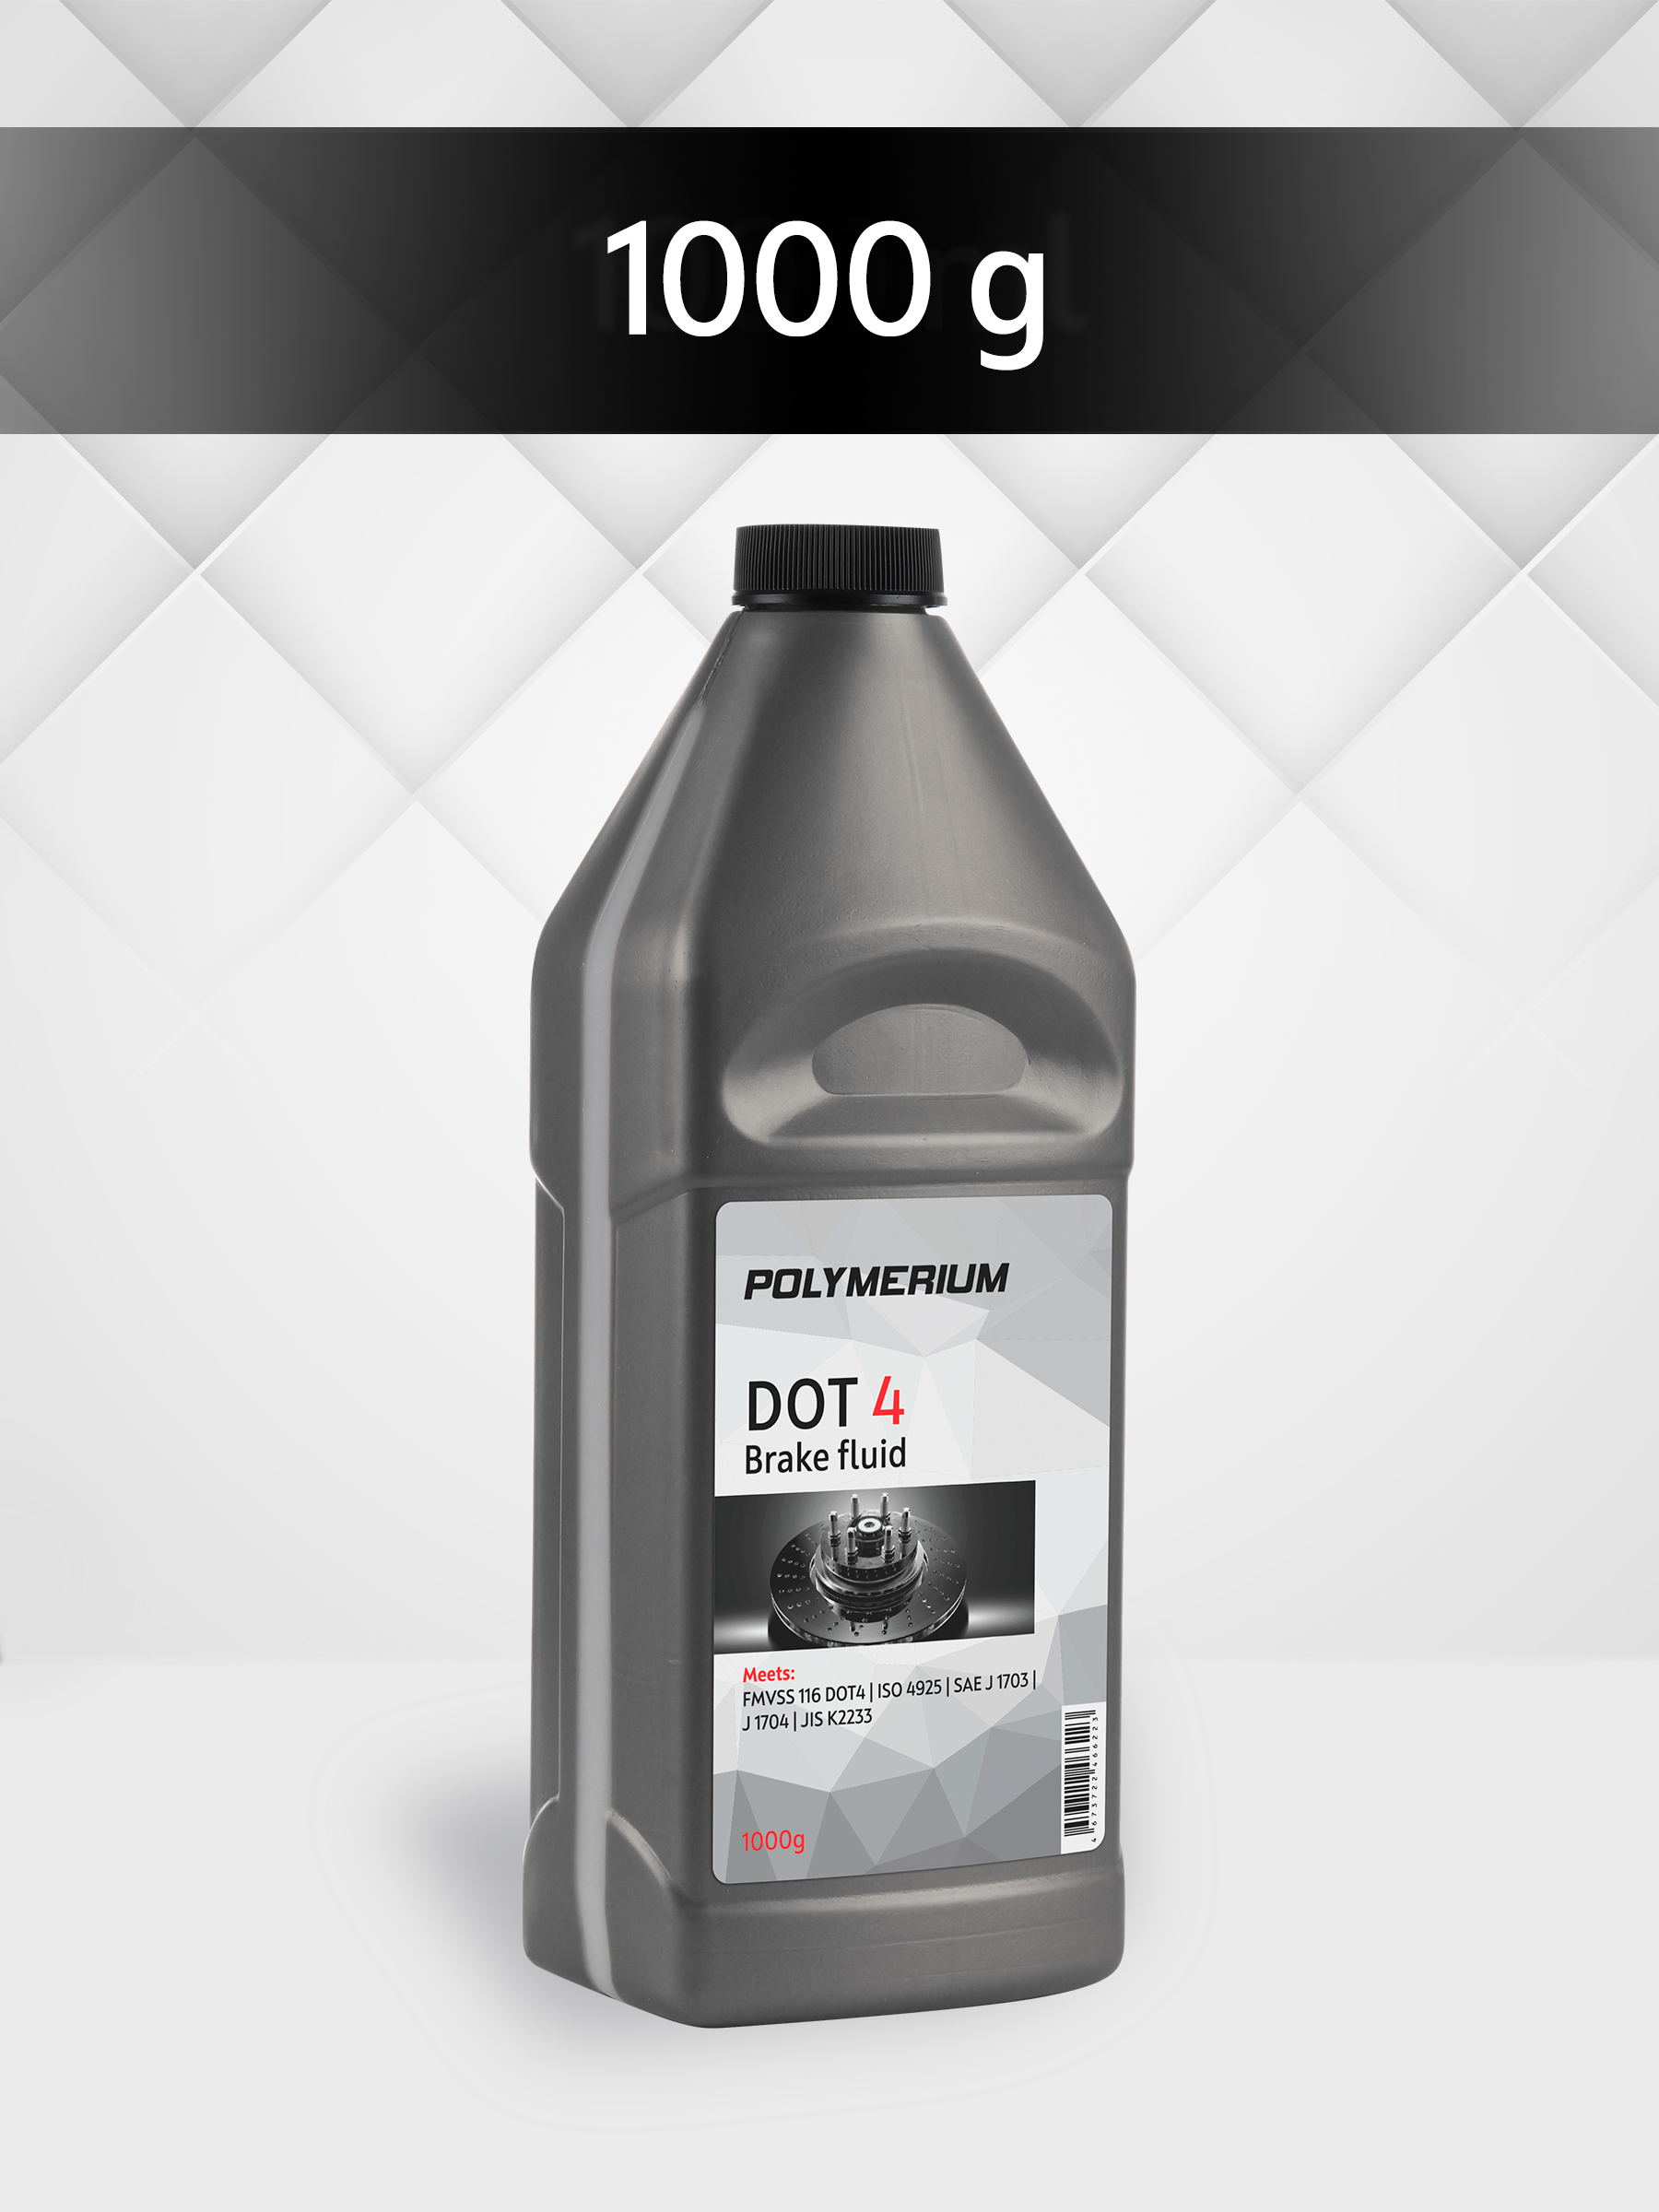 Тормозная жидкость Polymerium Dot 4 1000g